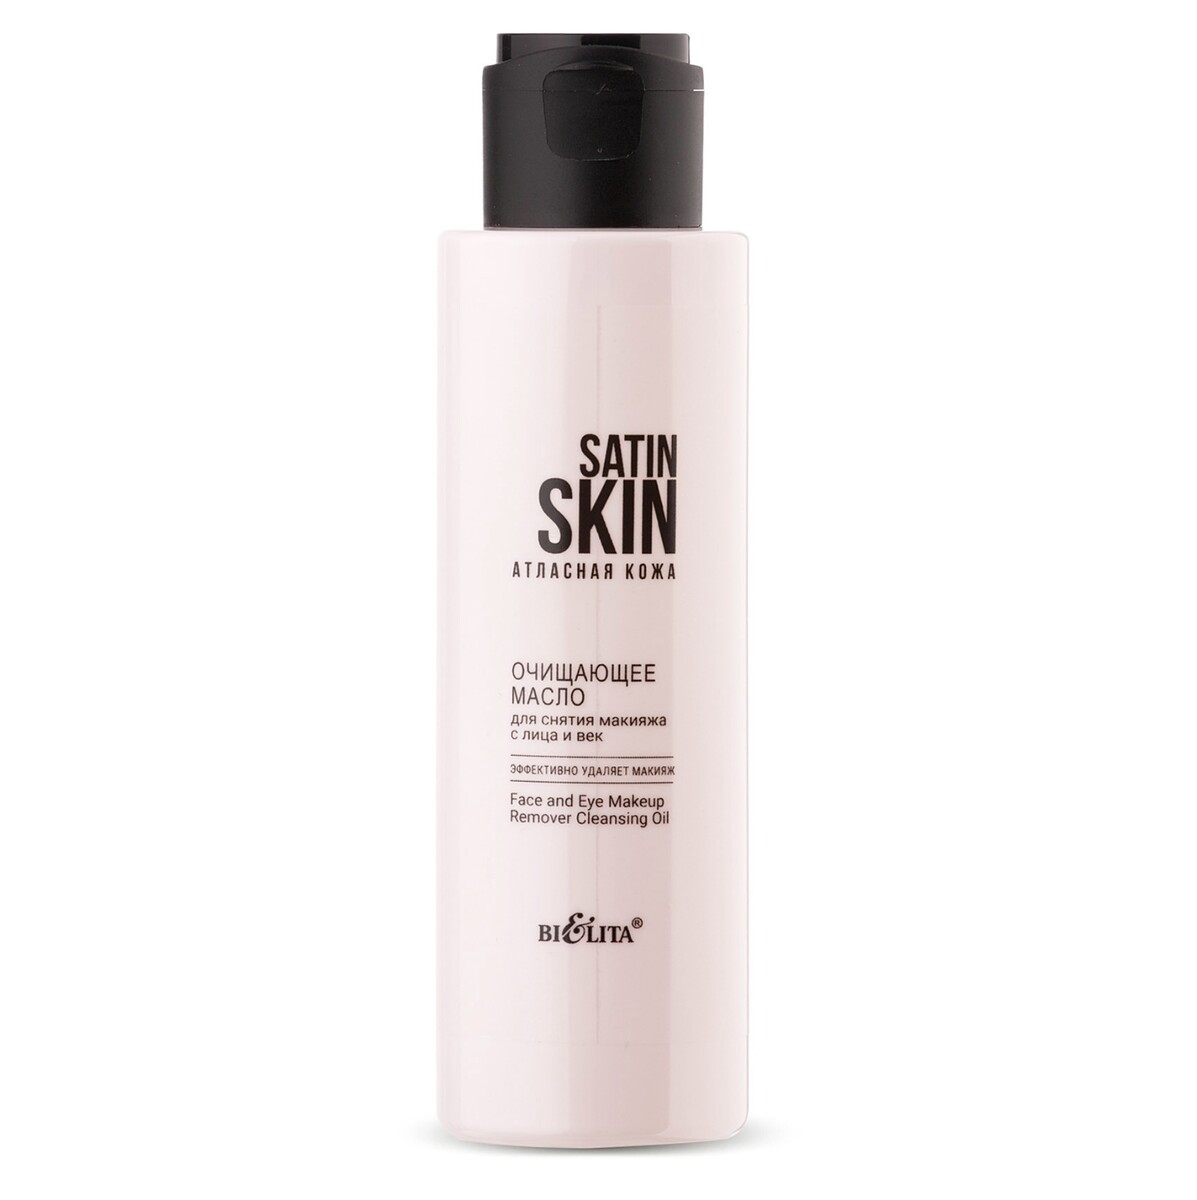 Satin skin атласная кожа масло очищающее для снятия макияжа с лица и век 115мл атласная кожа гель праймер для умывания лица безупречный тон 95мл